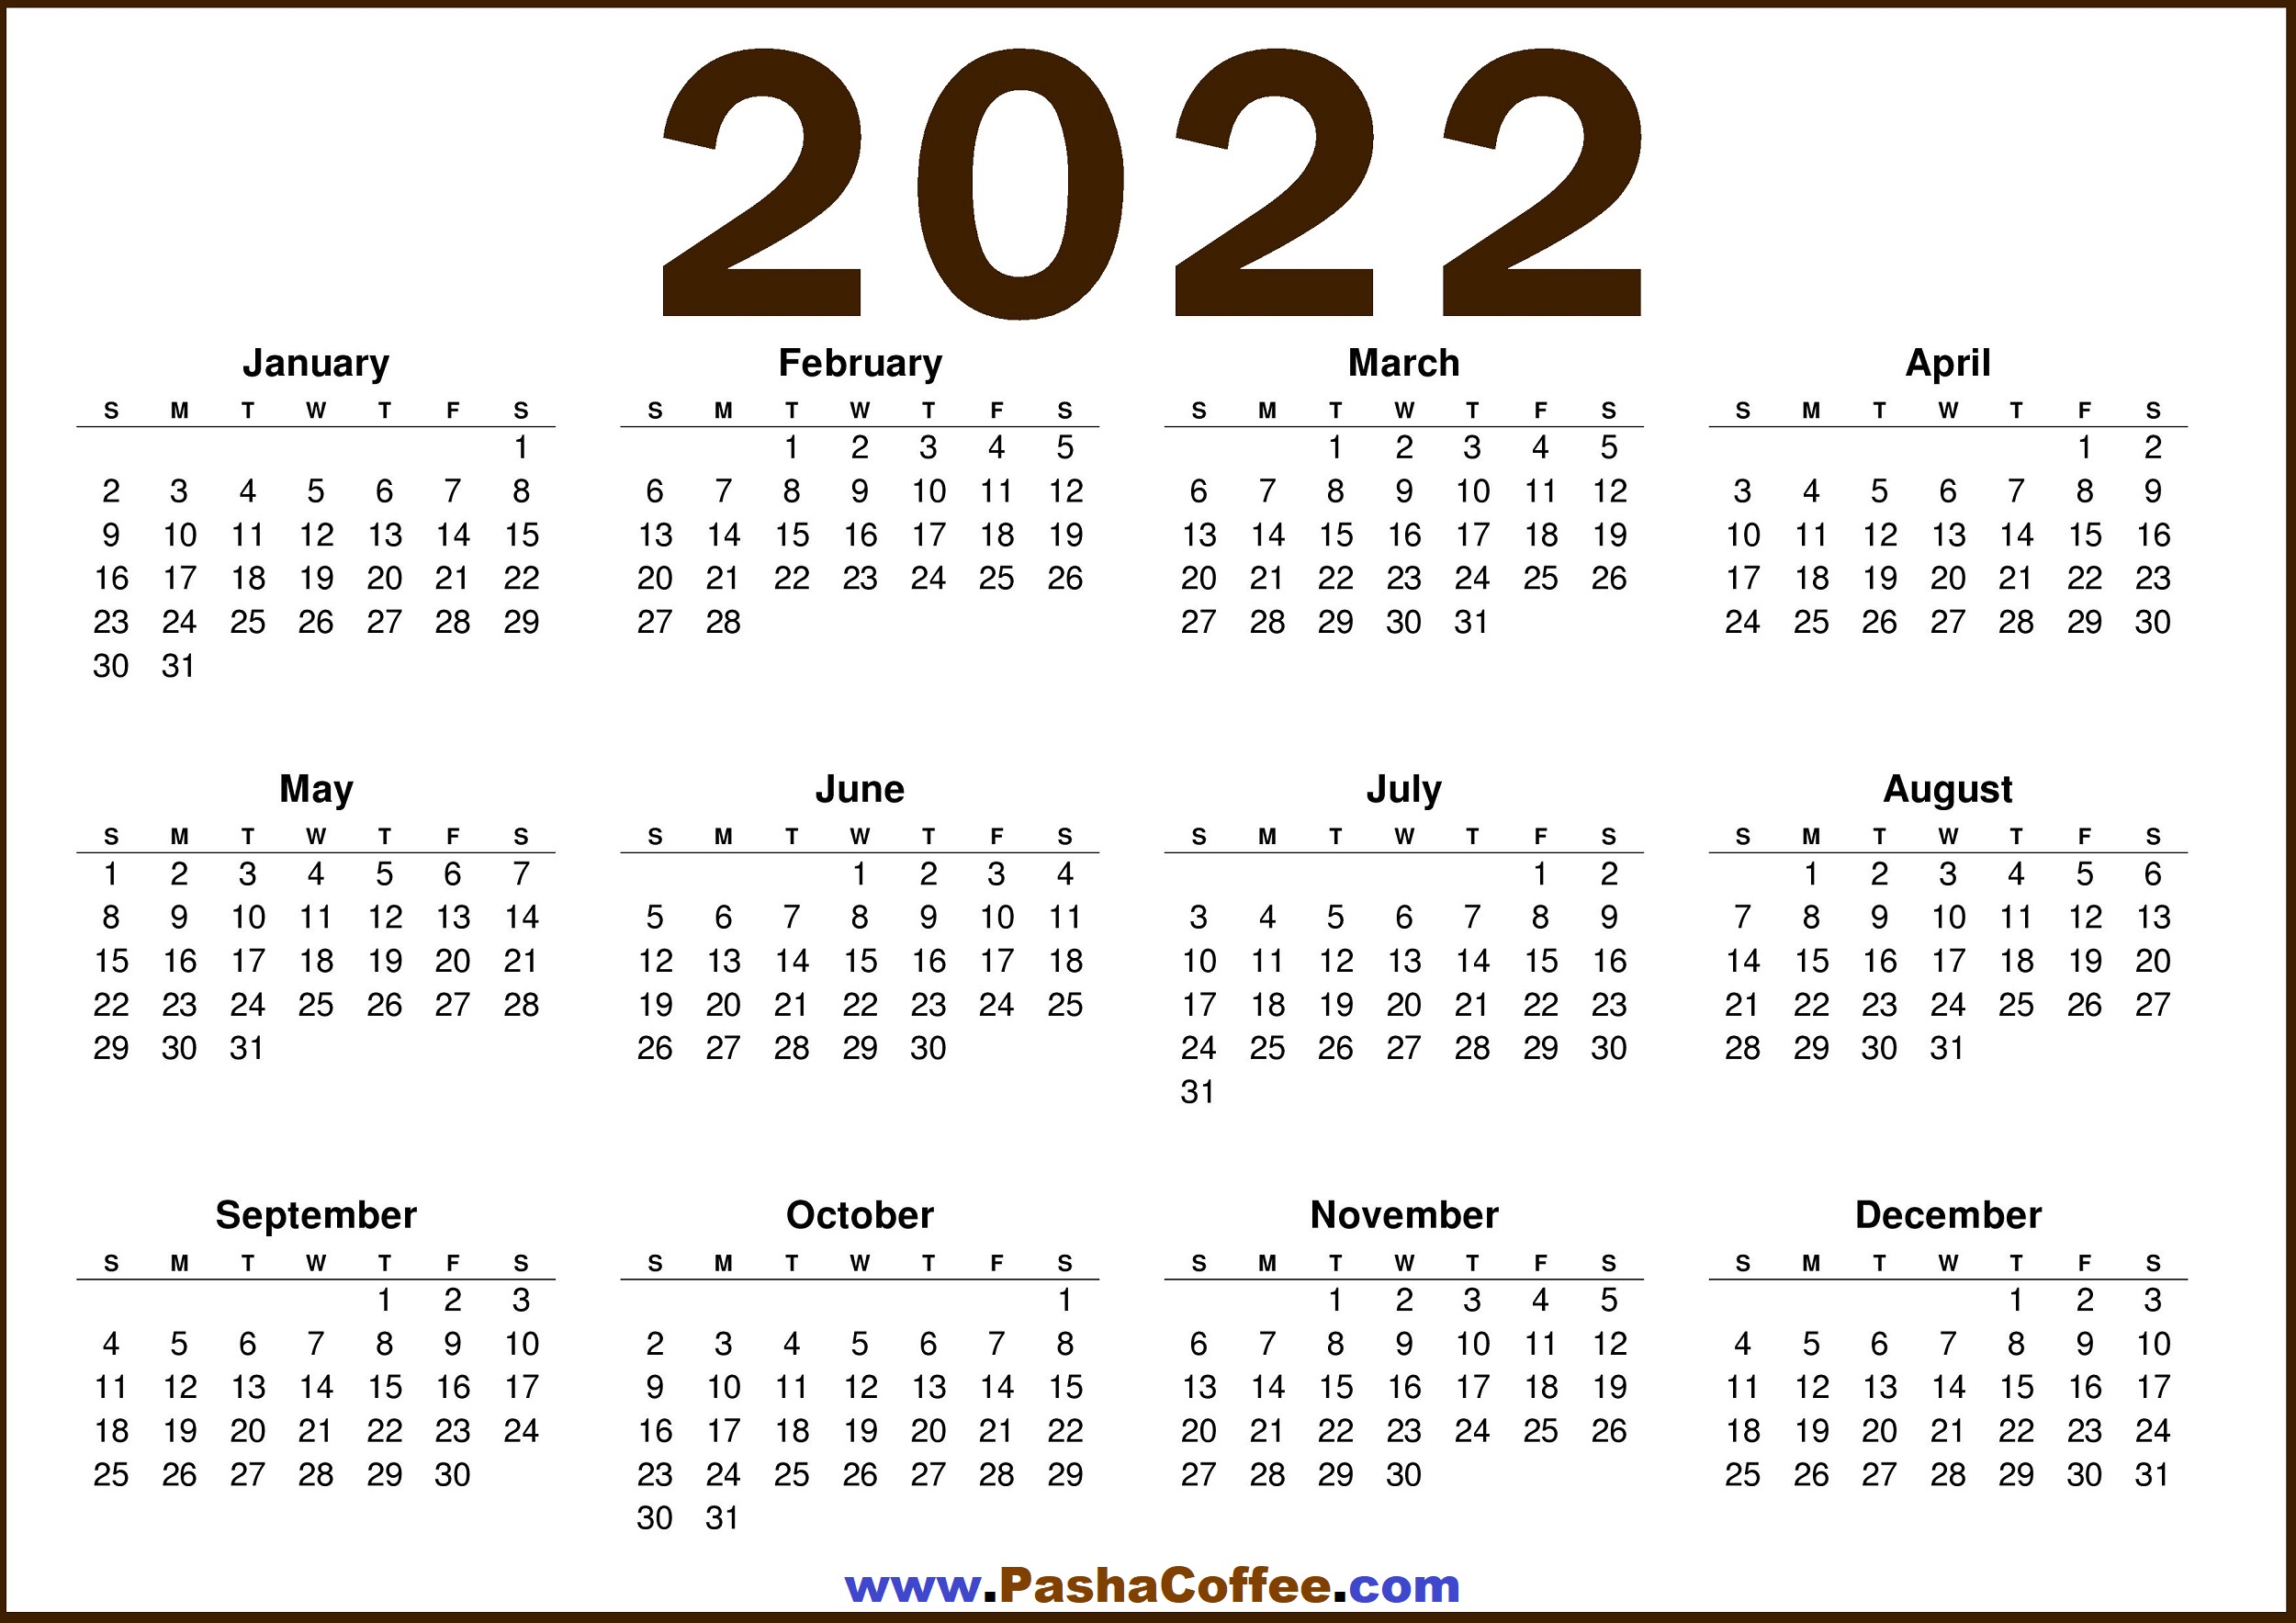 Free Printable 2022 Calendar 2022 Calendar Us – Free Printable 2022 Calendar – Pashacoffee.com